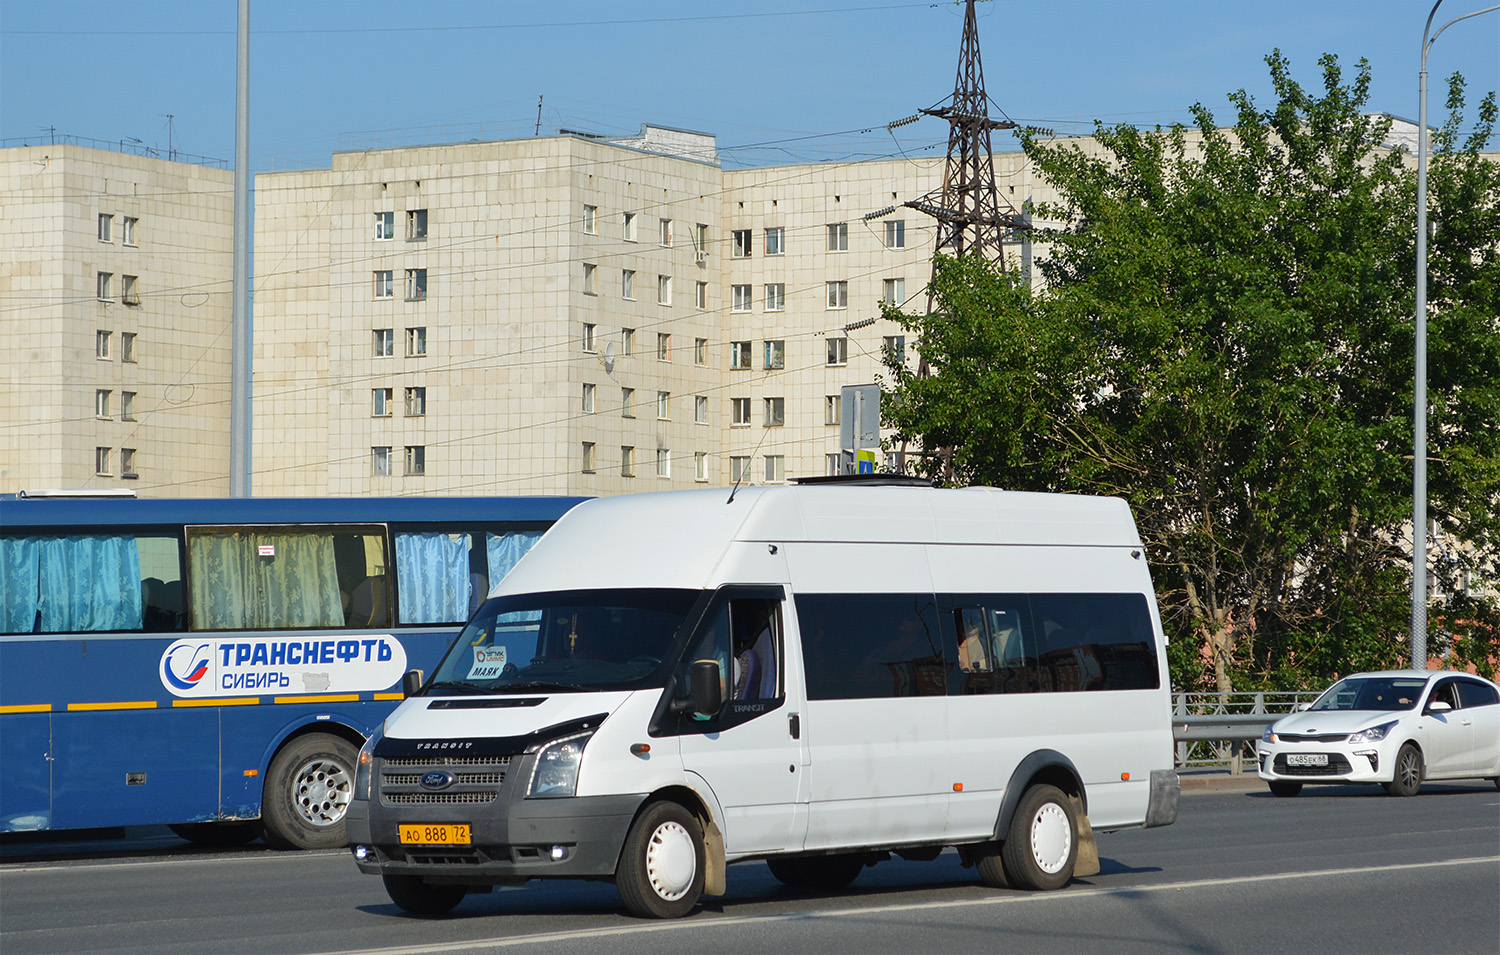 Тюменская область, Ford Transit [RUS] (Z6F.ESF.) № АО 888 72